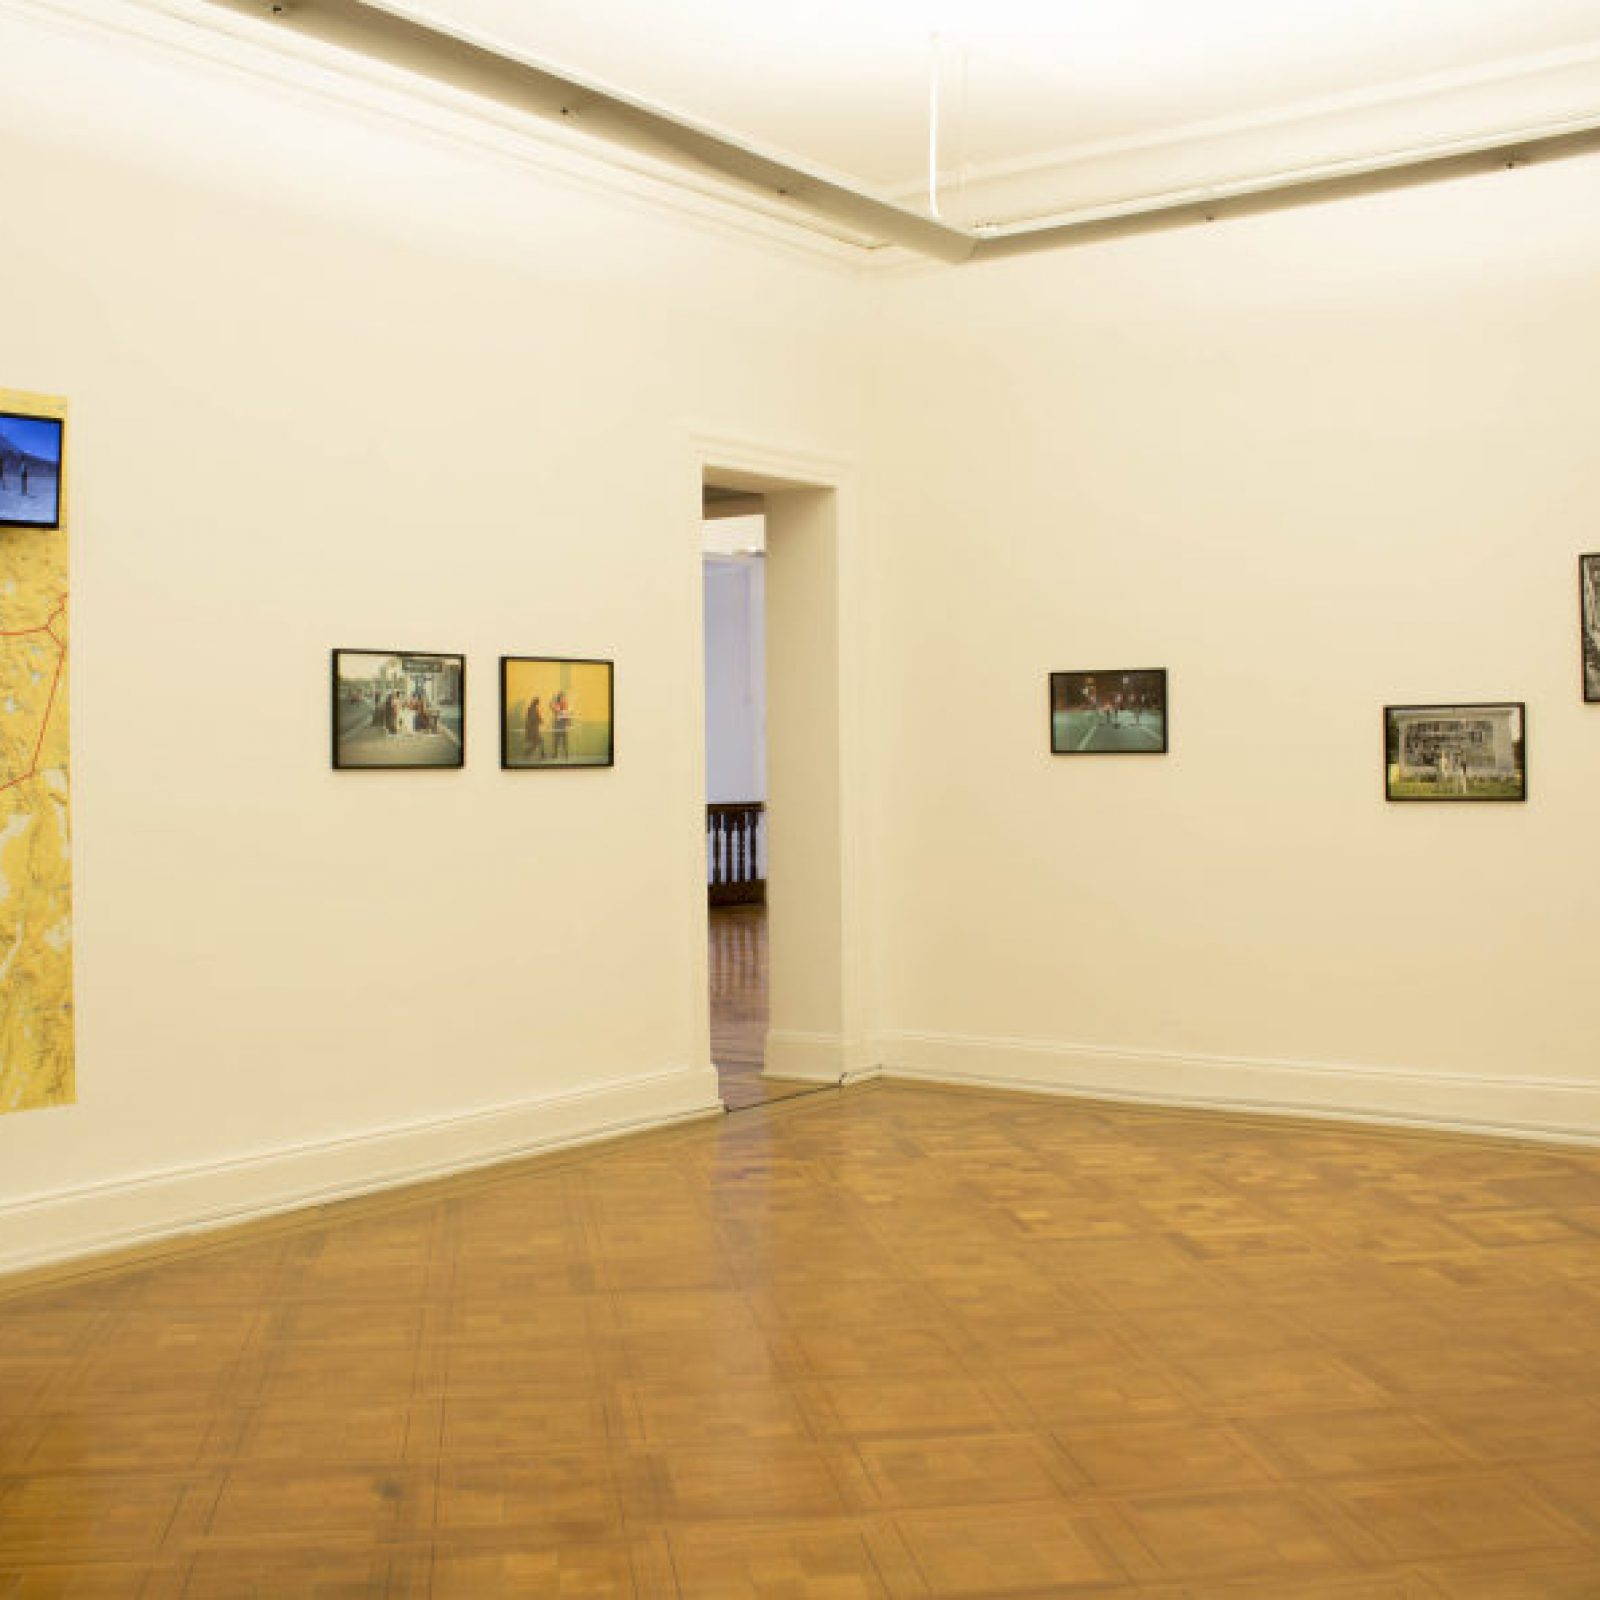 Vista de la exposición "Muros Blandos" en el Museo de la Solidaridad Salvador Allende. Cortesía: MSSA